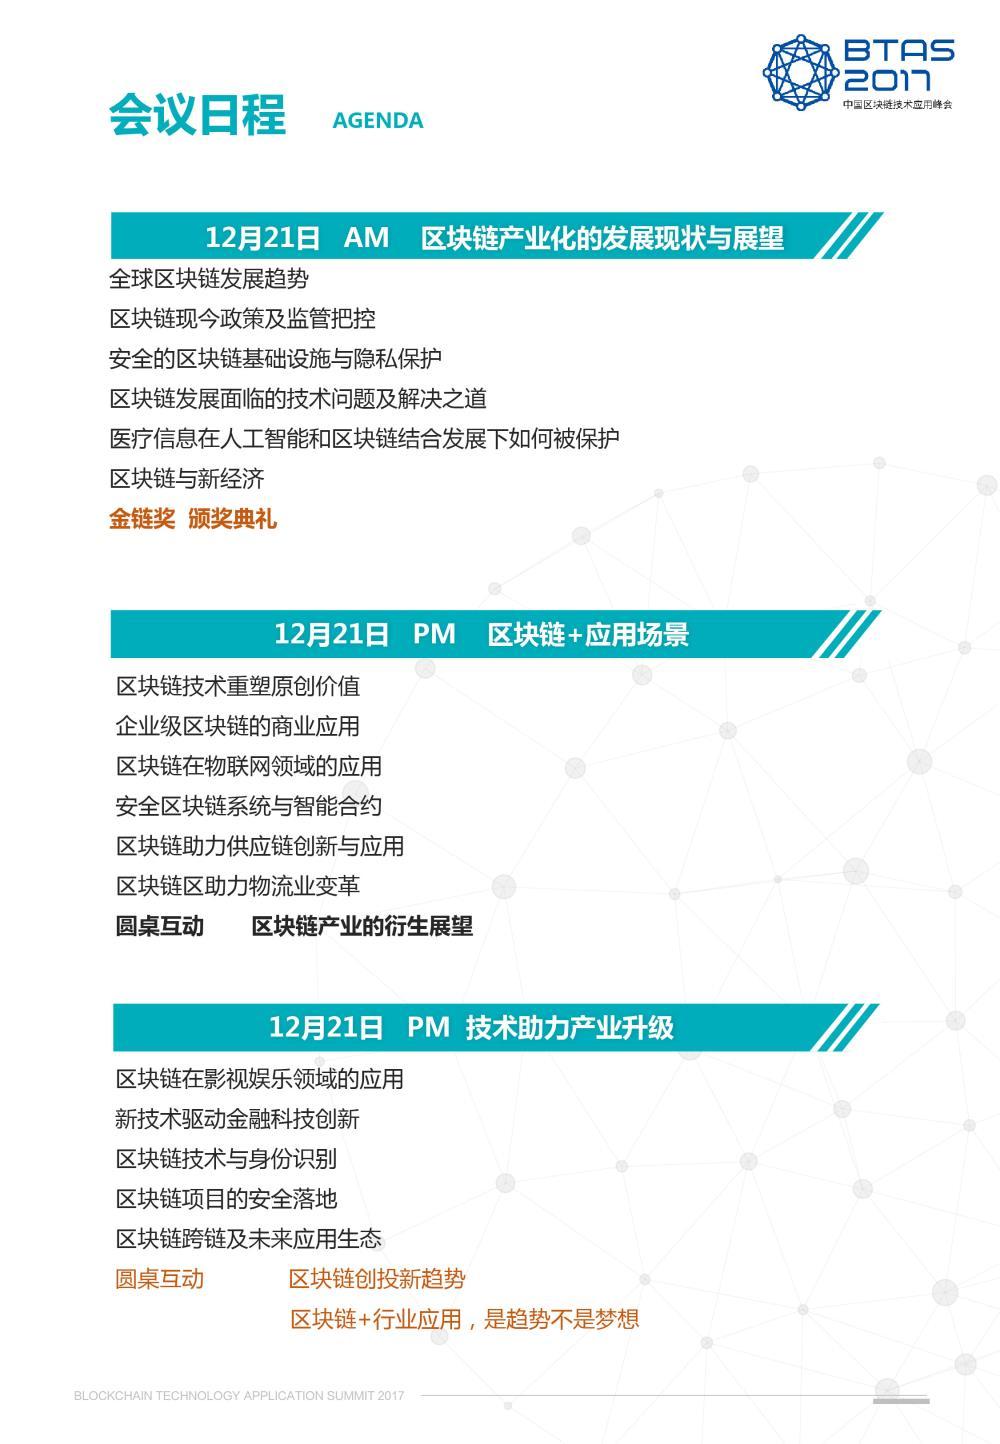 2017中国区块链技术应用峰会